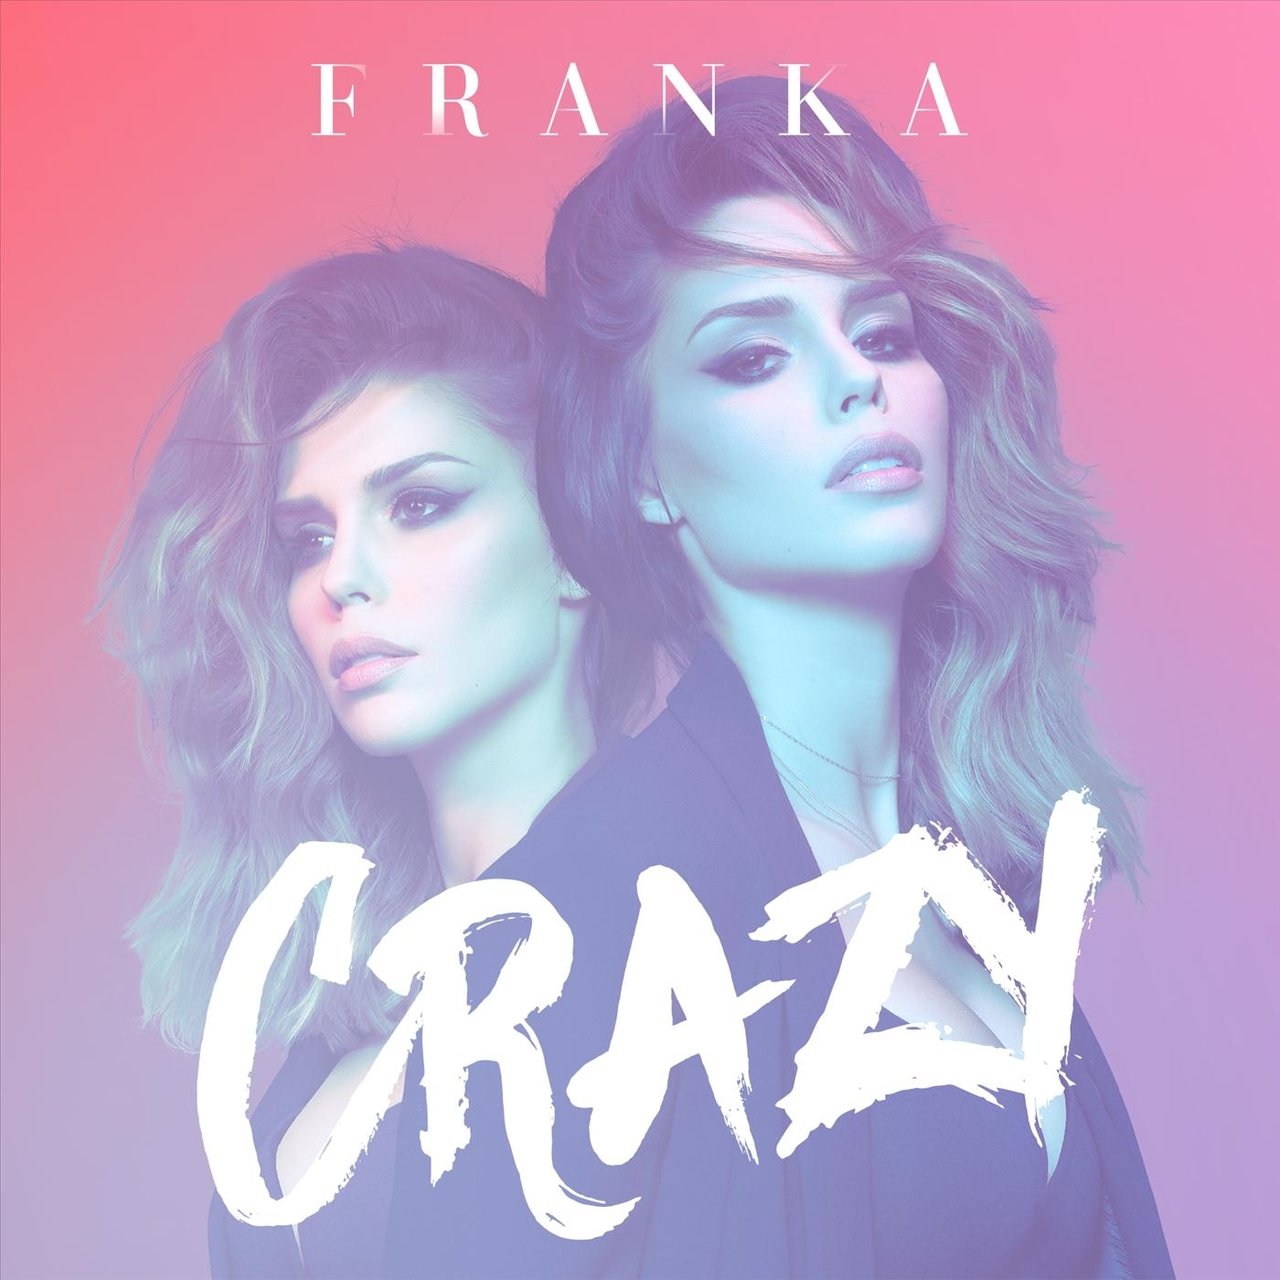 Franka — Crazy cover artwork